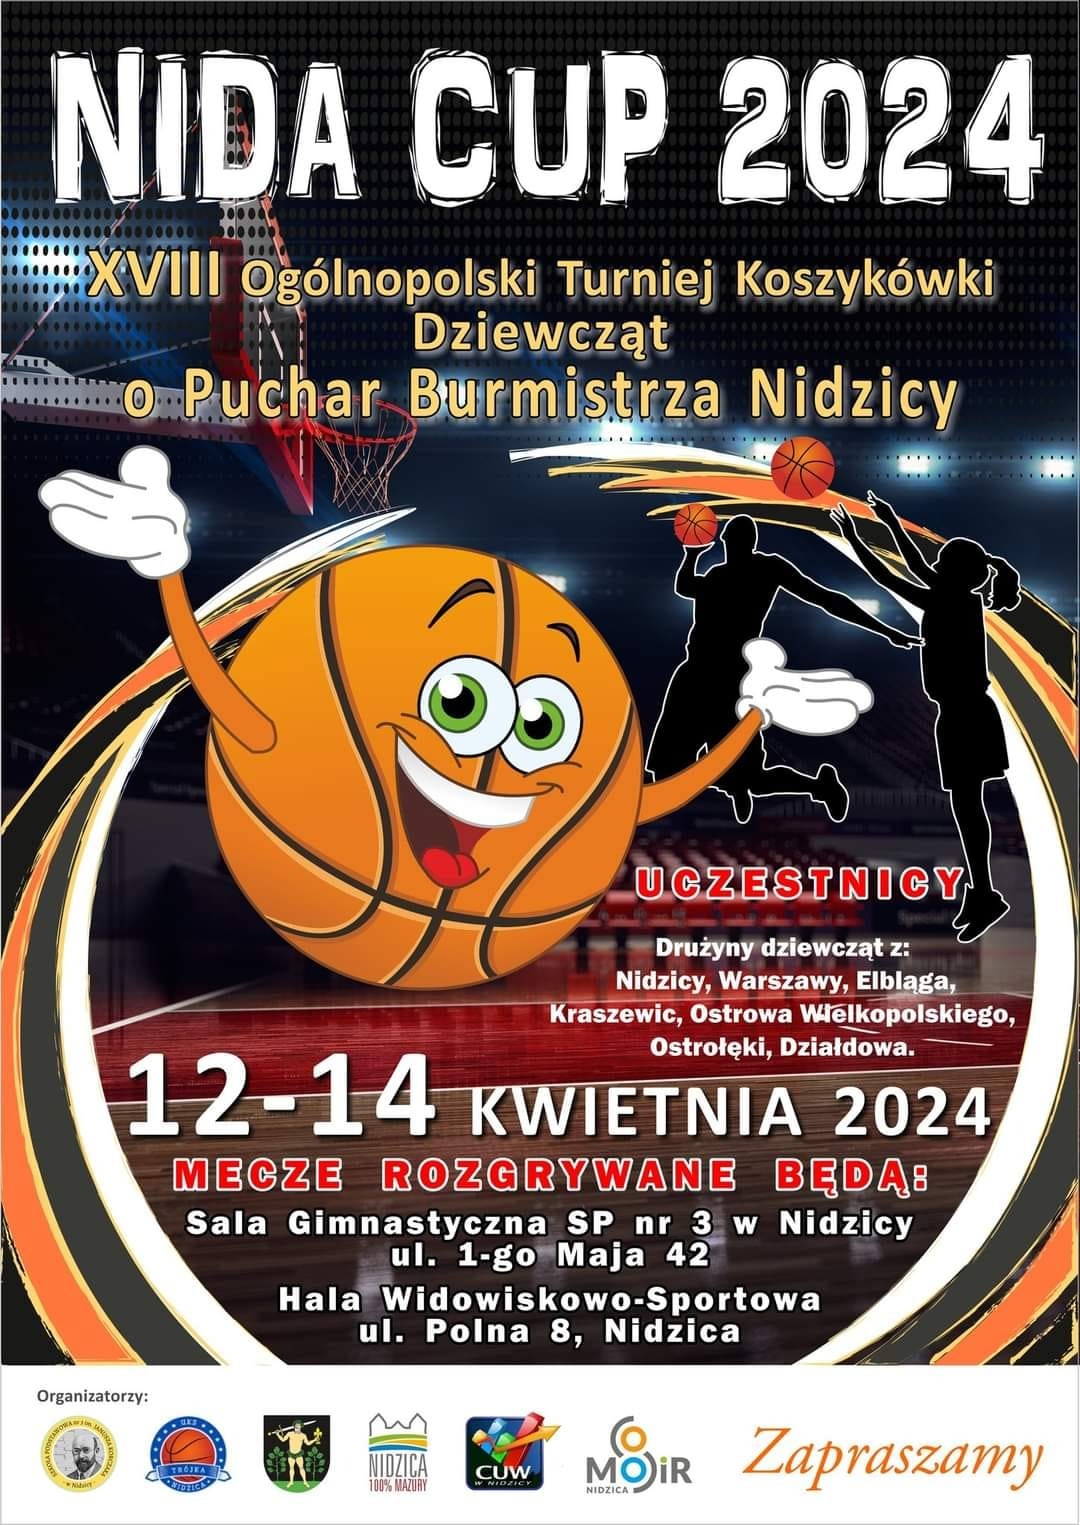 Terminarz meczów w XVIII Ogólnopolskim Turnieju Koszykówki NIDA CUP 2024 - Obrazek 3